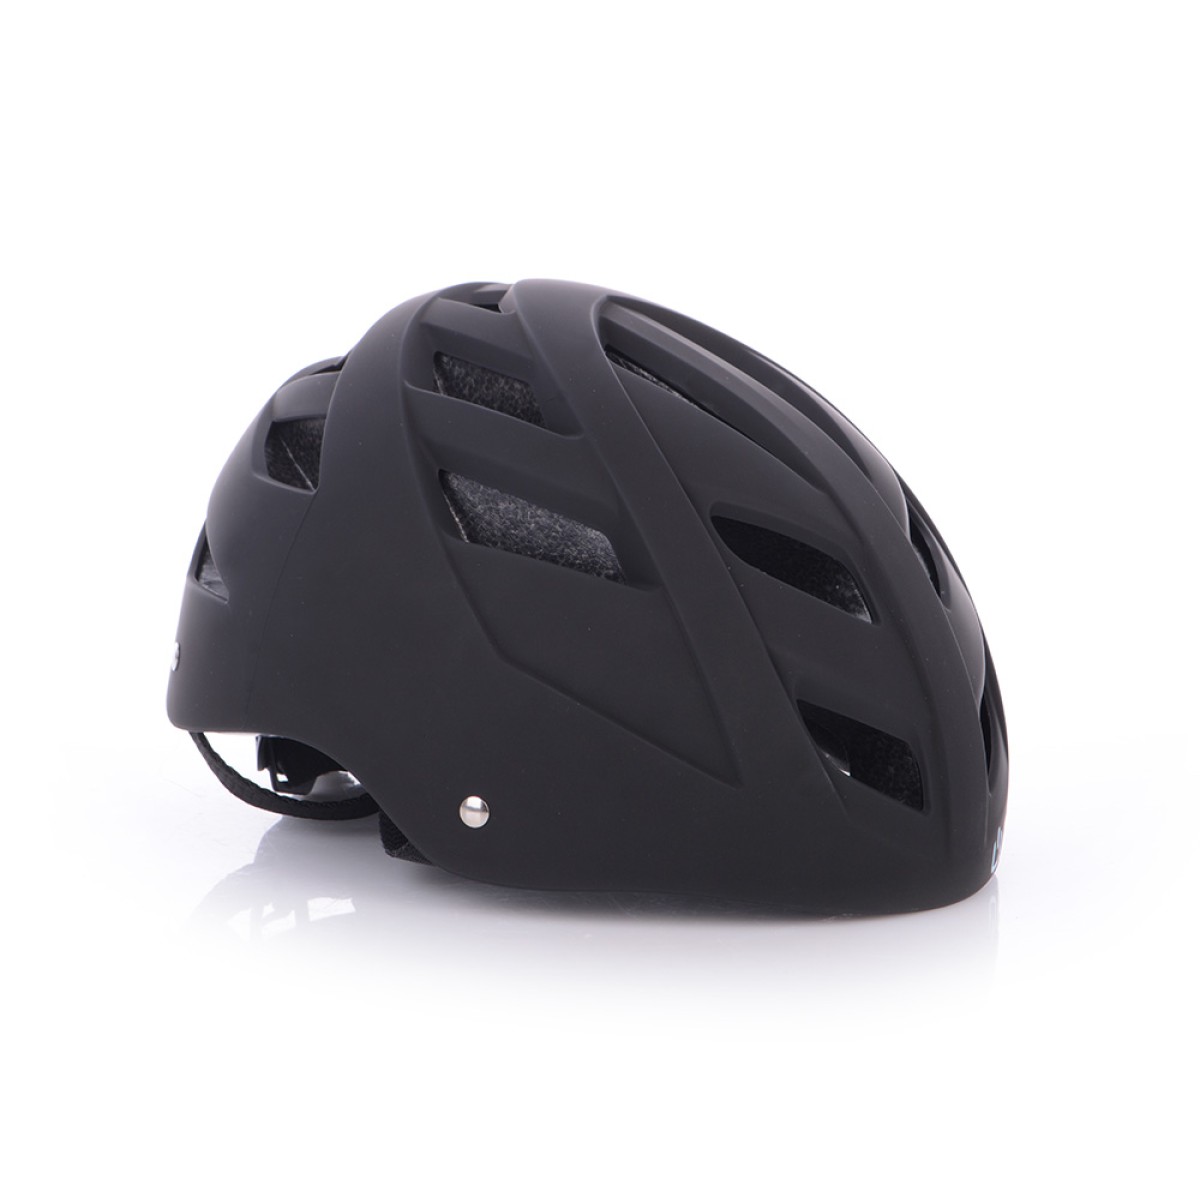 URBIS helmet for e-scooter black URBIS - view 3